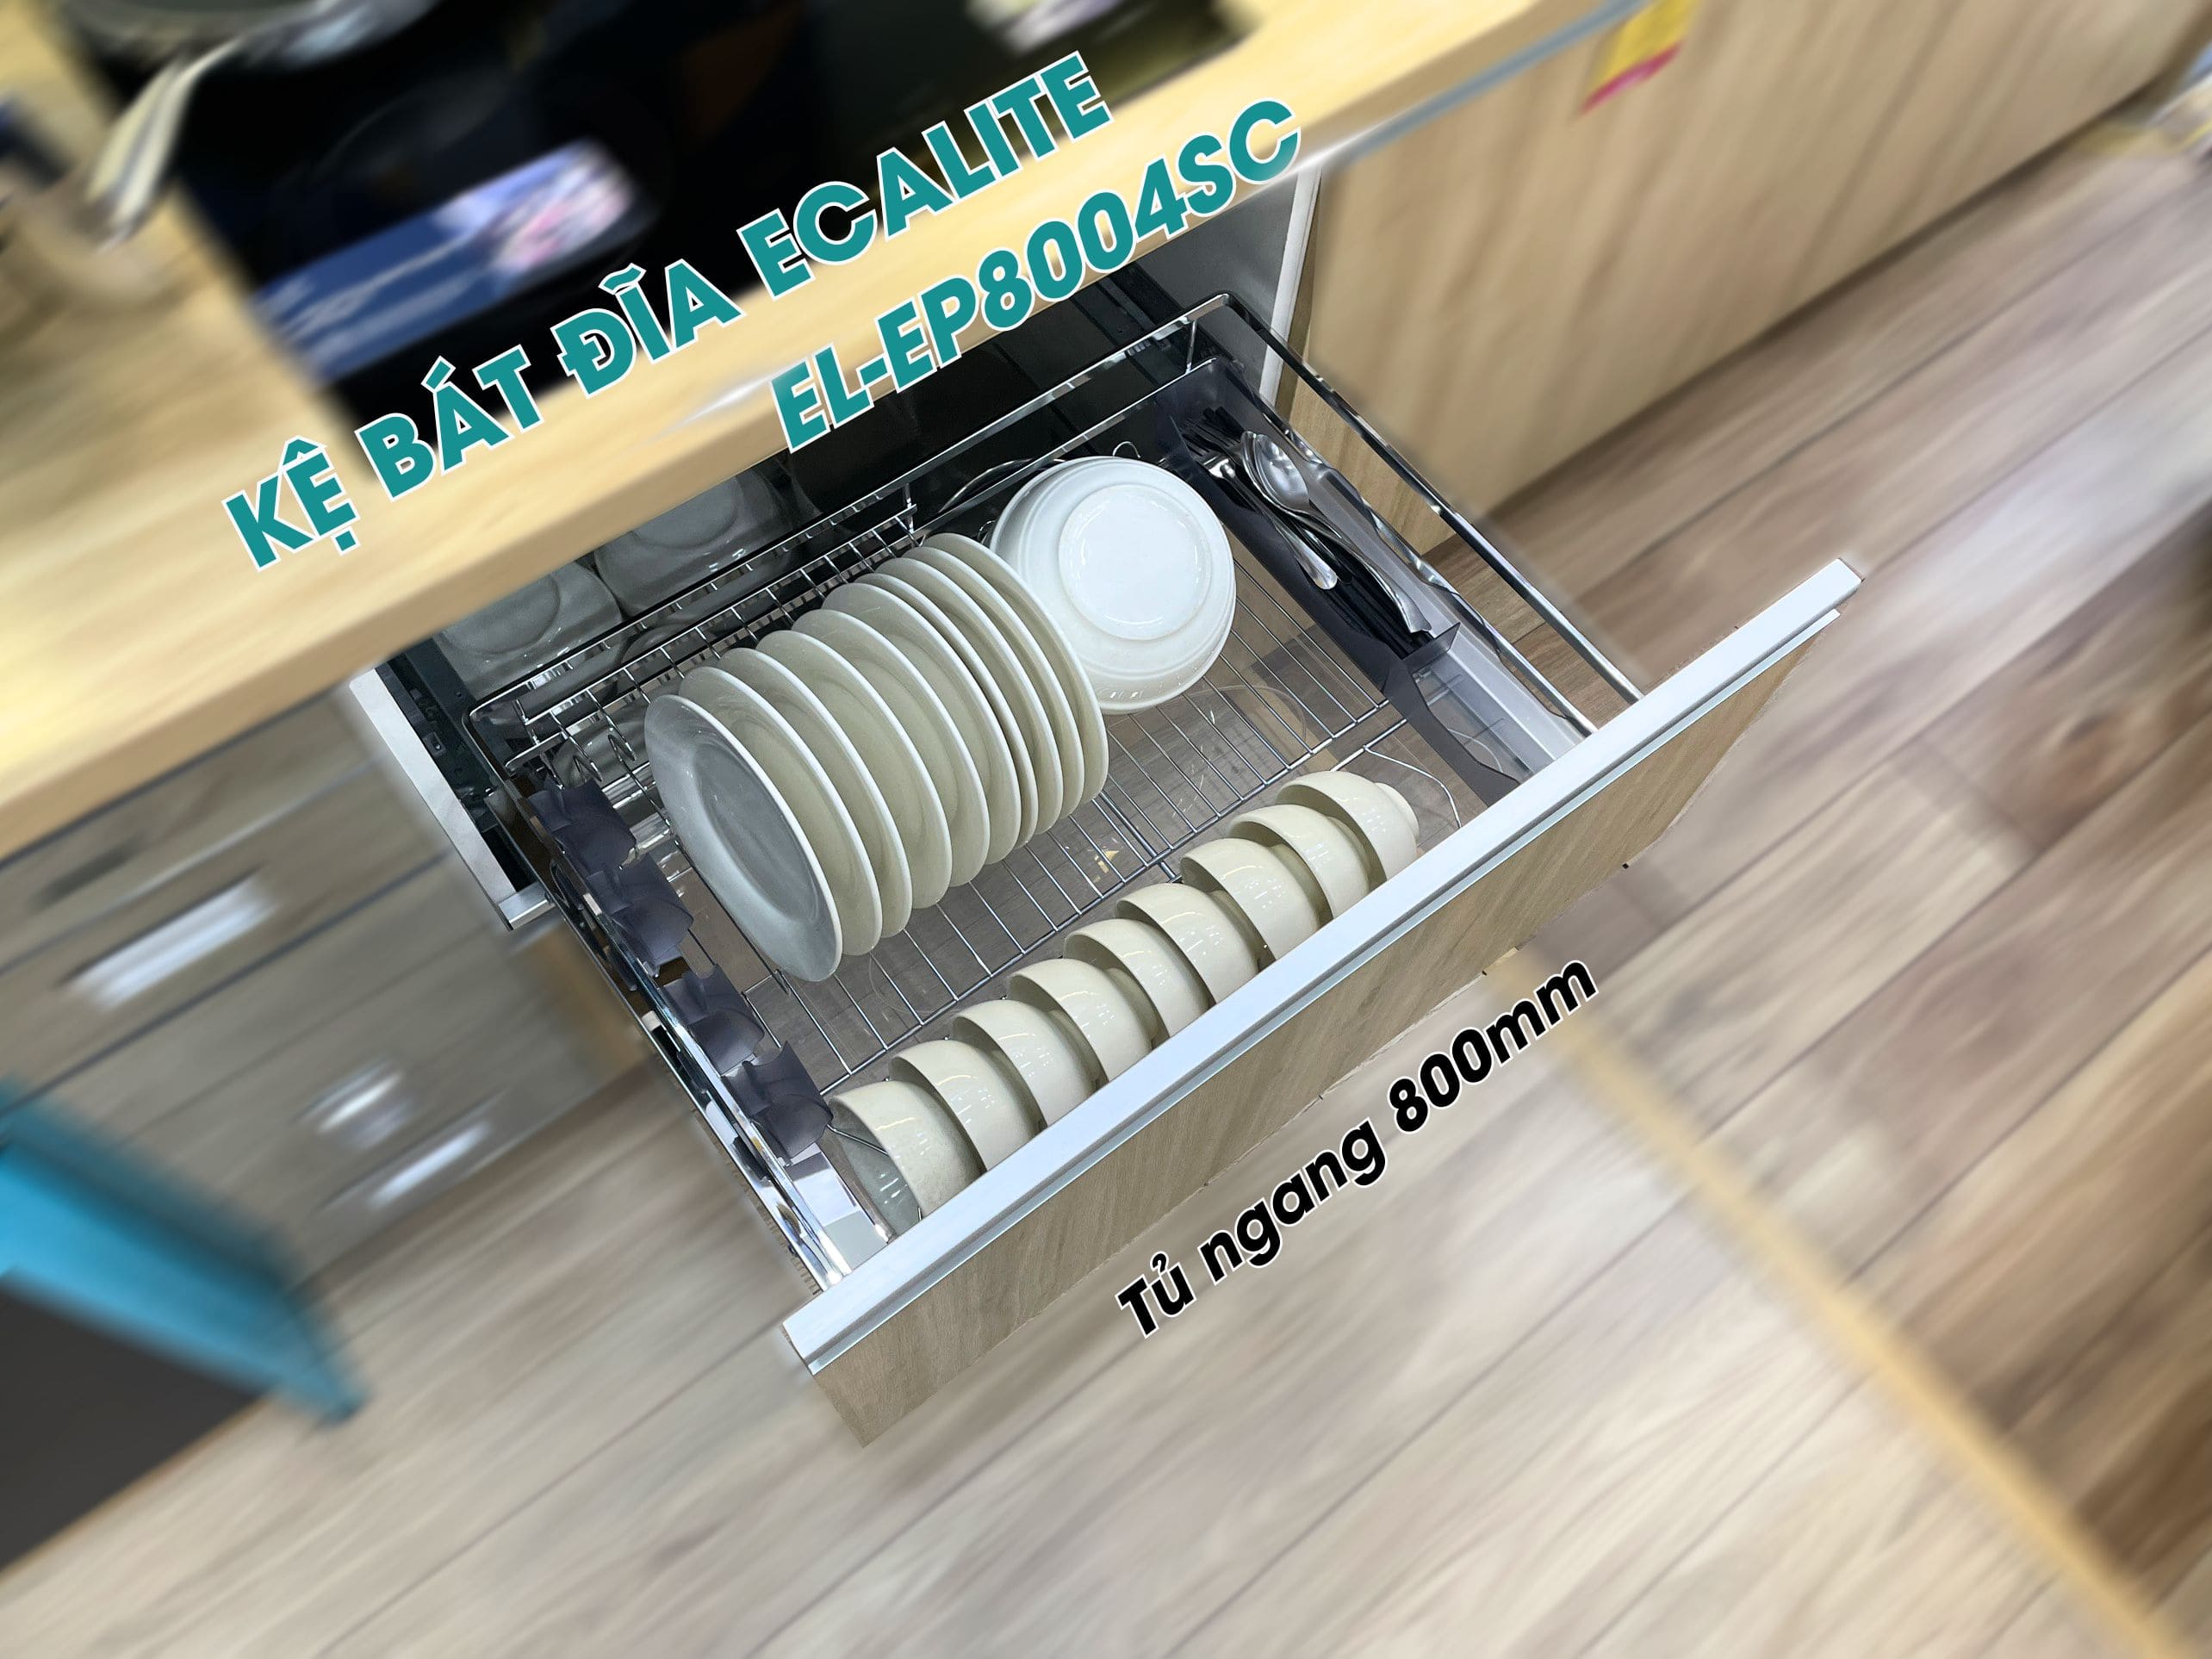 Kệ bát đĩa tủ dưới Ecalite EL-EP8004SC